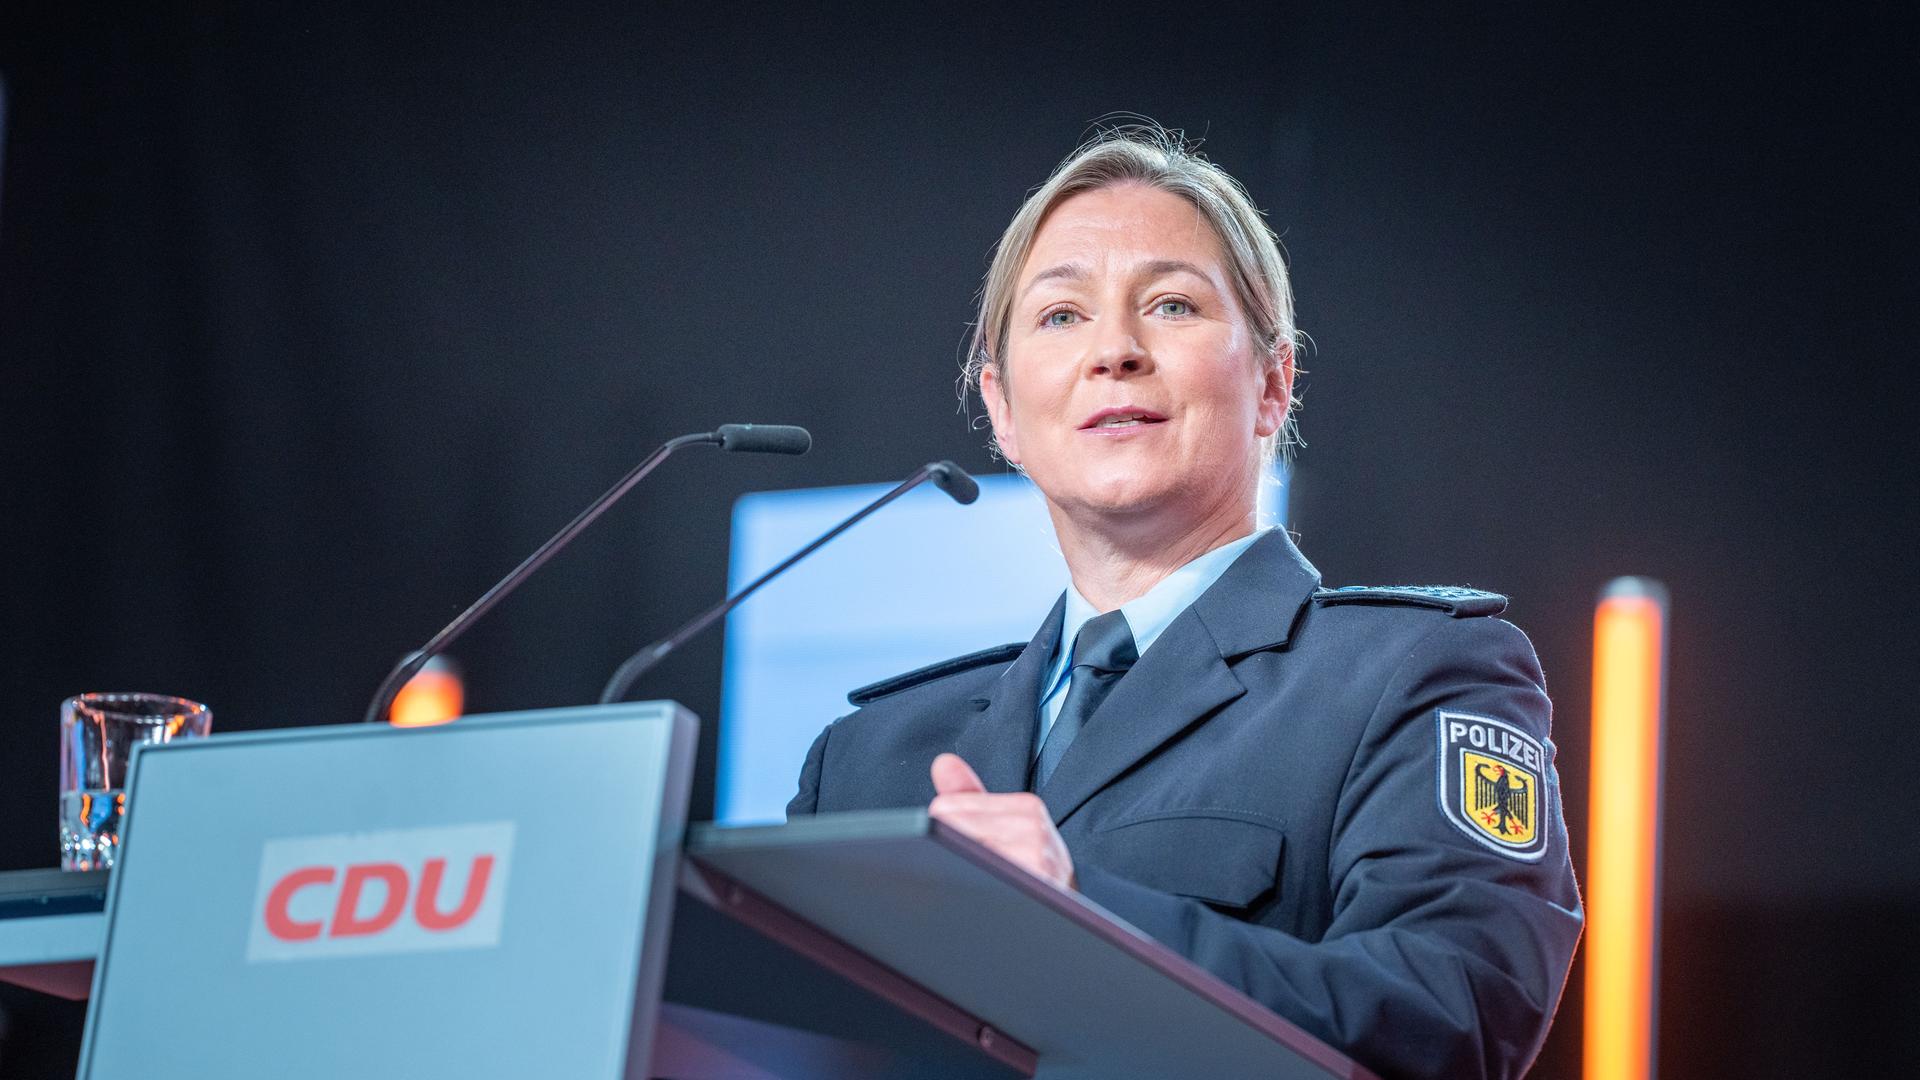 Claudia Pechstein, Olympiasiegerin im Eissschnelllauf, spricht in ihrer Uniform als Bundespolizistin beim CDU-Grundsatzkonvent.